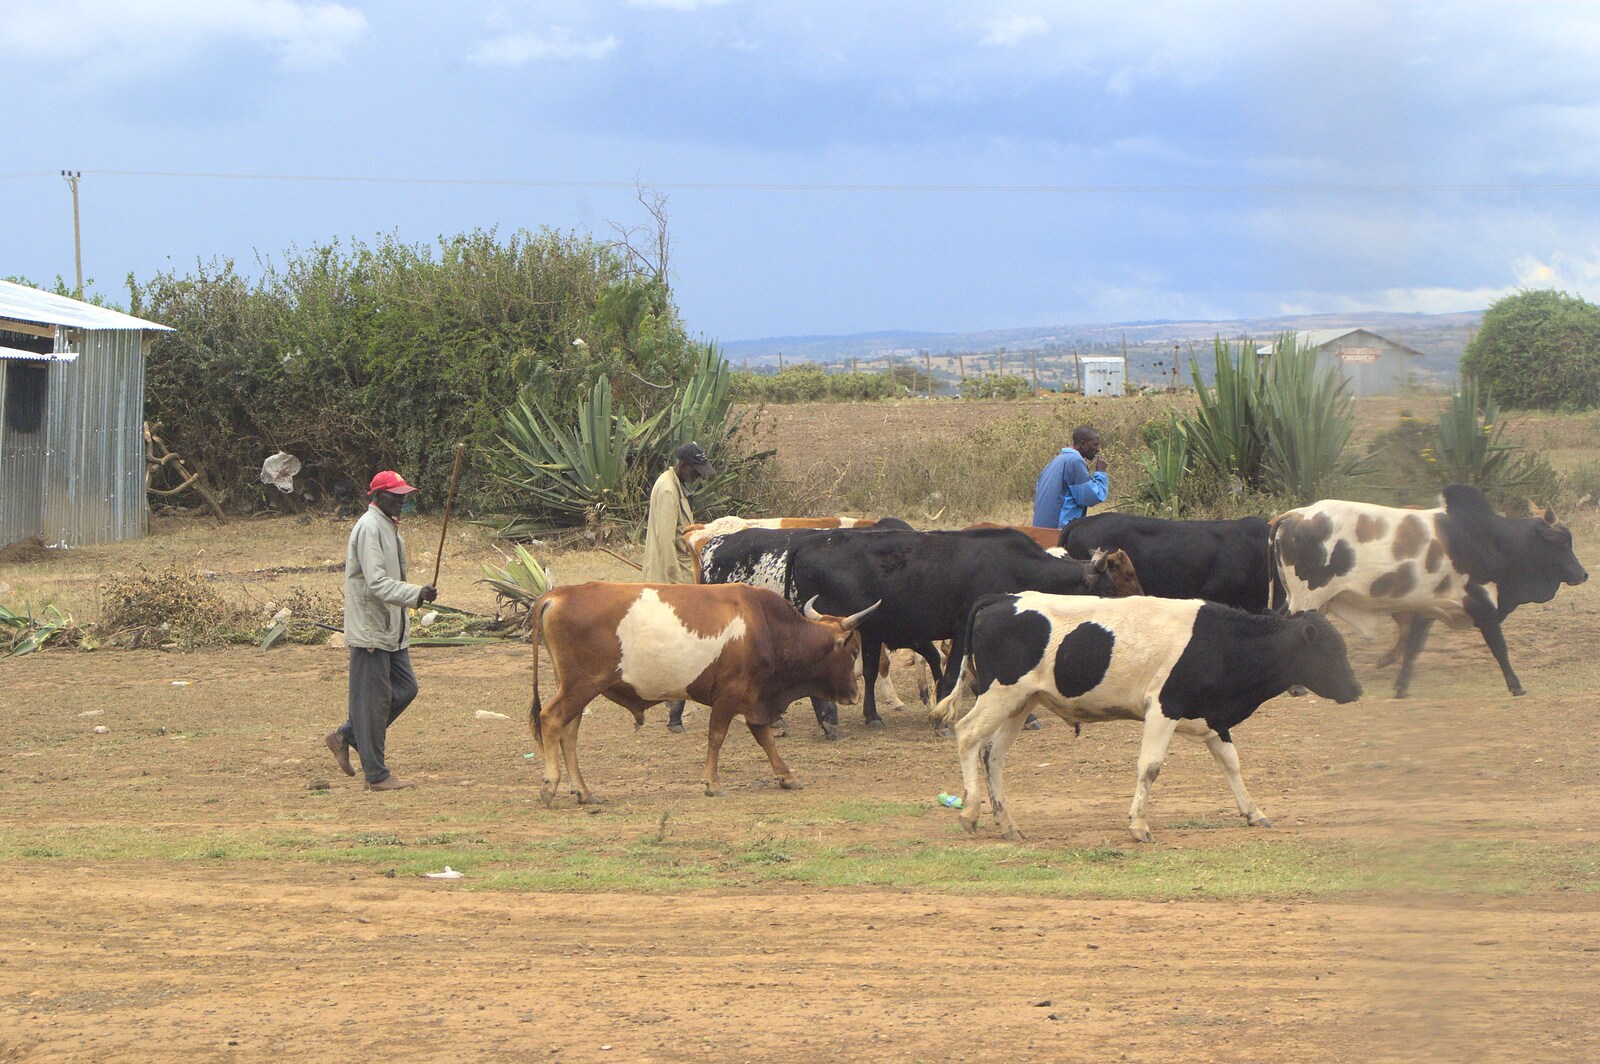 Cow herding from Nairobi and the Road to Maasai Mara, Kenya, Africa - 1st November 2010